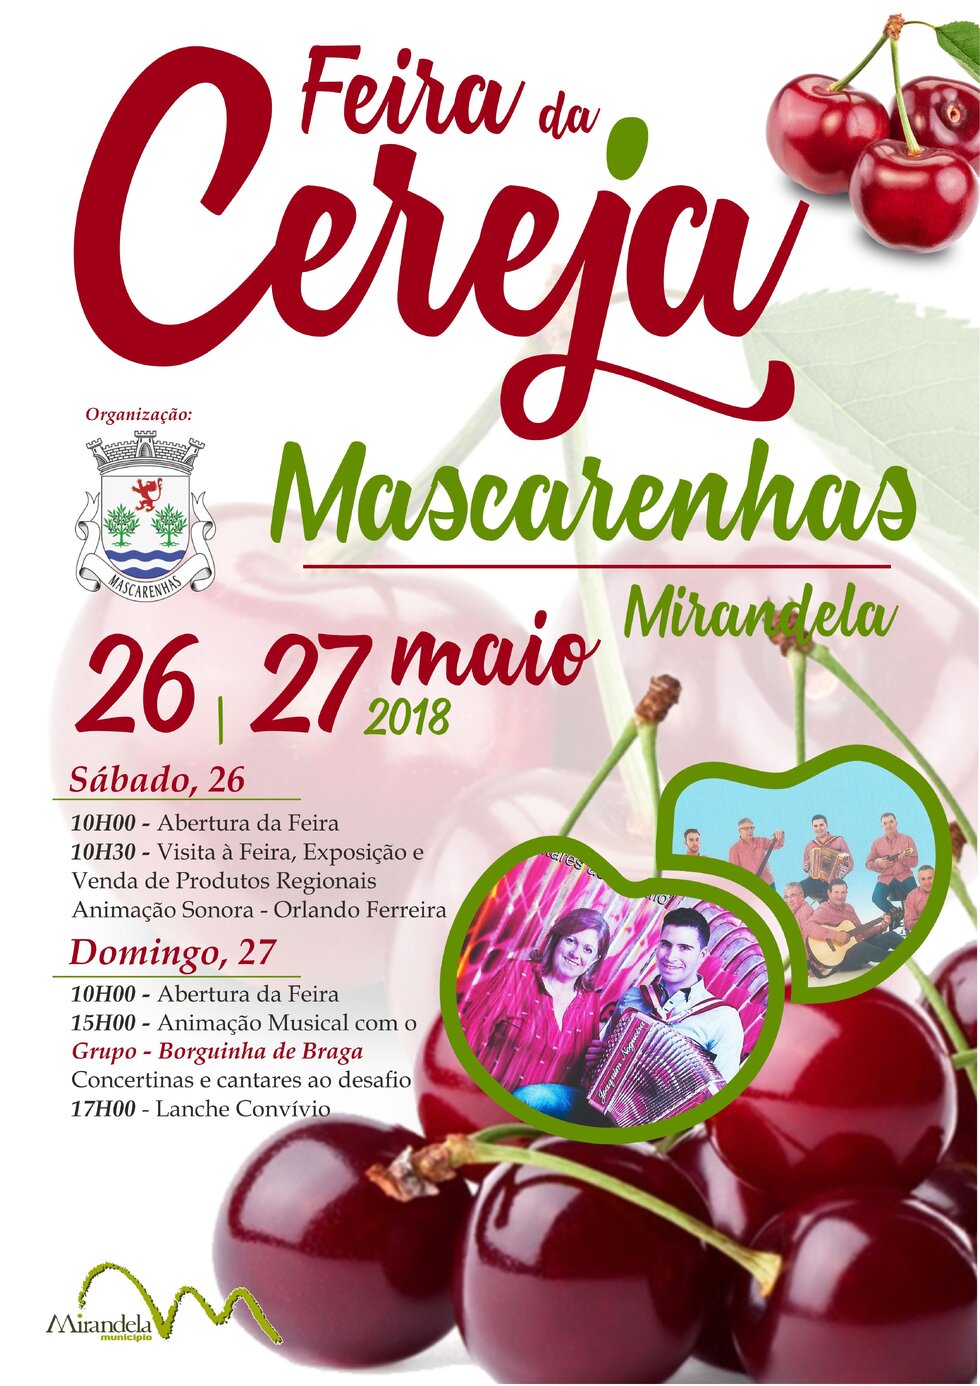 cartaz_feira_cereja_mascarenhas_18